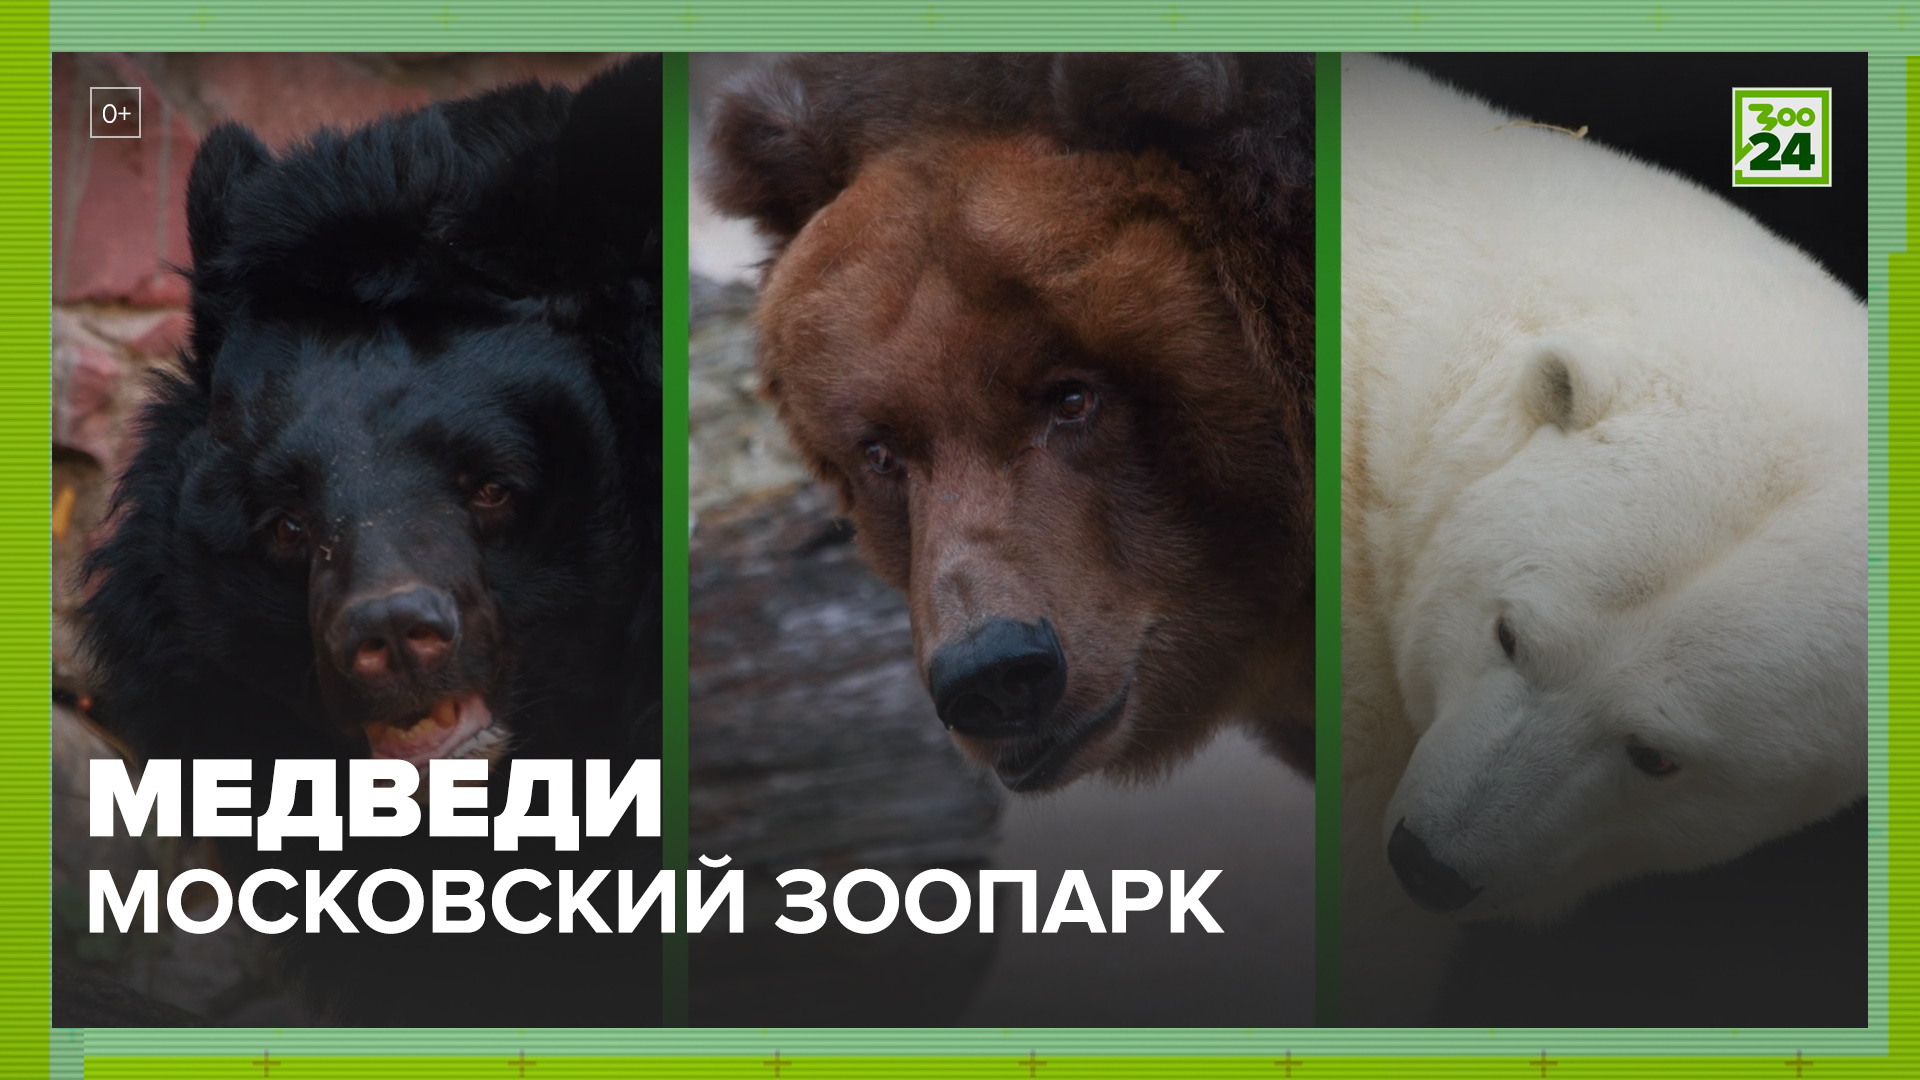 Медведи | Московский зоопарк | ЗОО 24